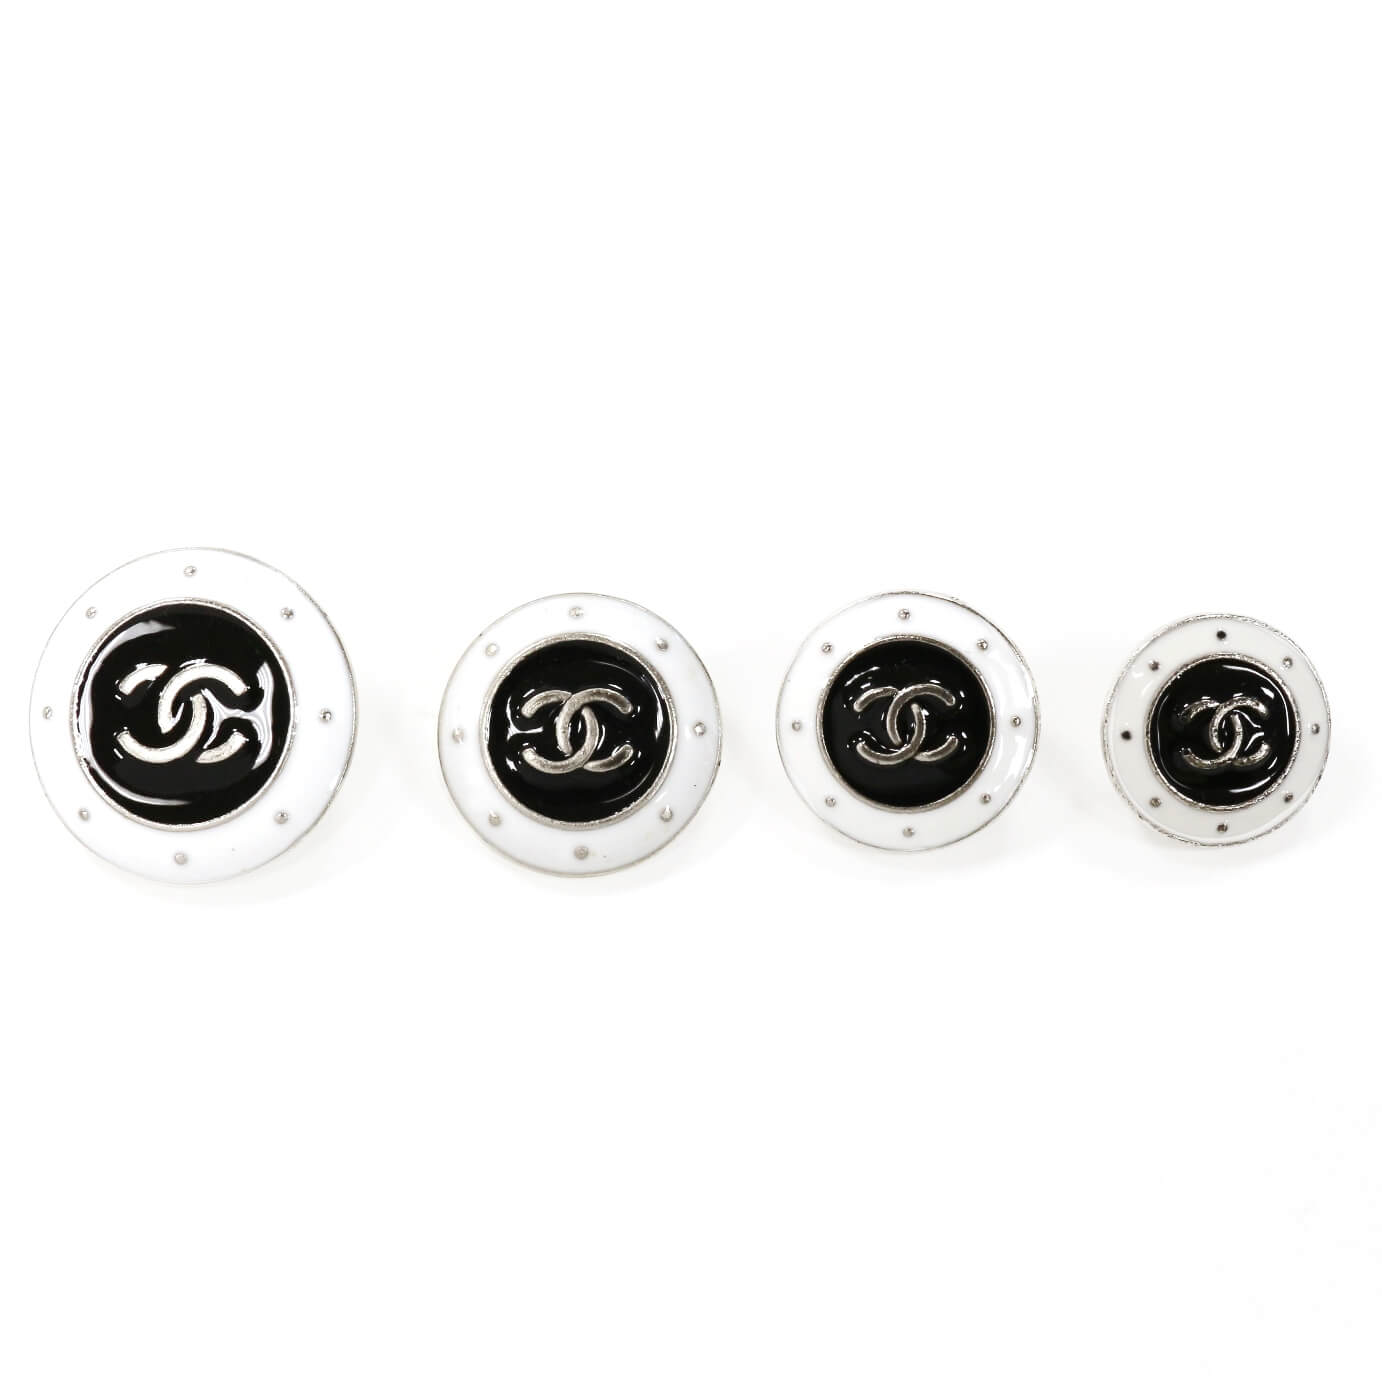 Пуговицы Chanel Ø2.4см, цвет Черно-белый, фото 2